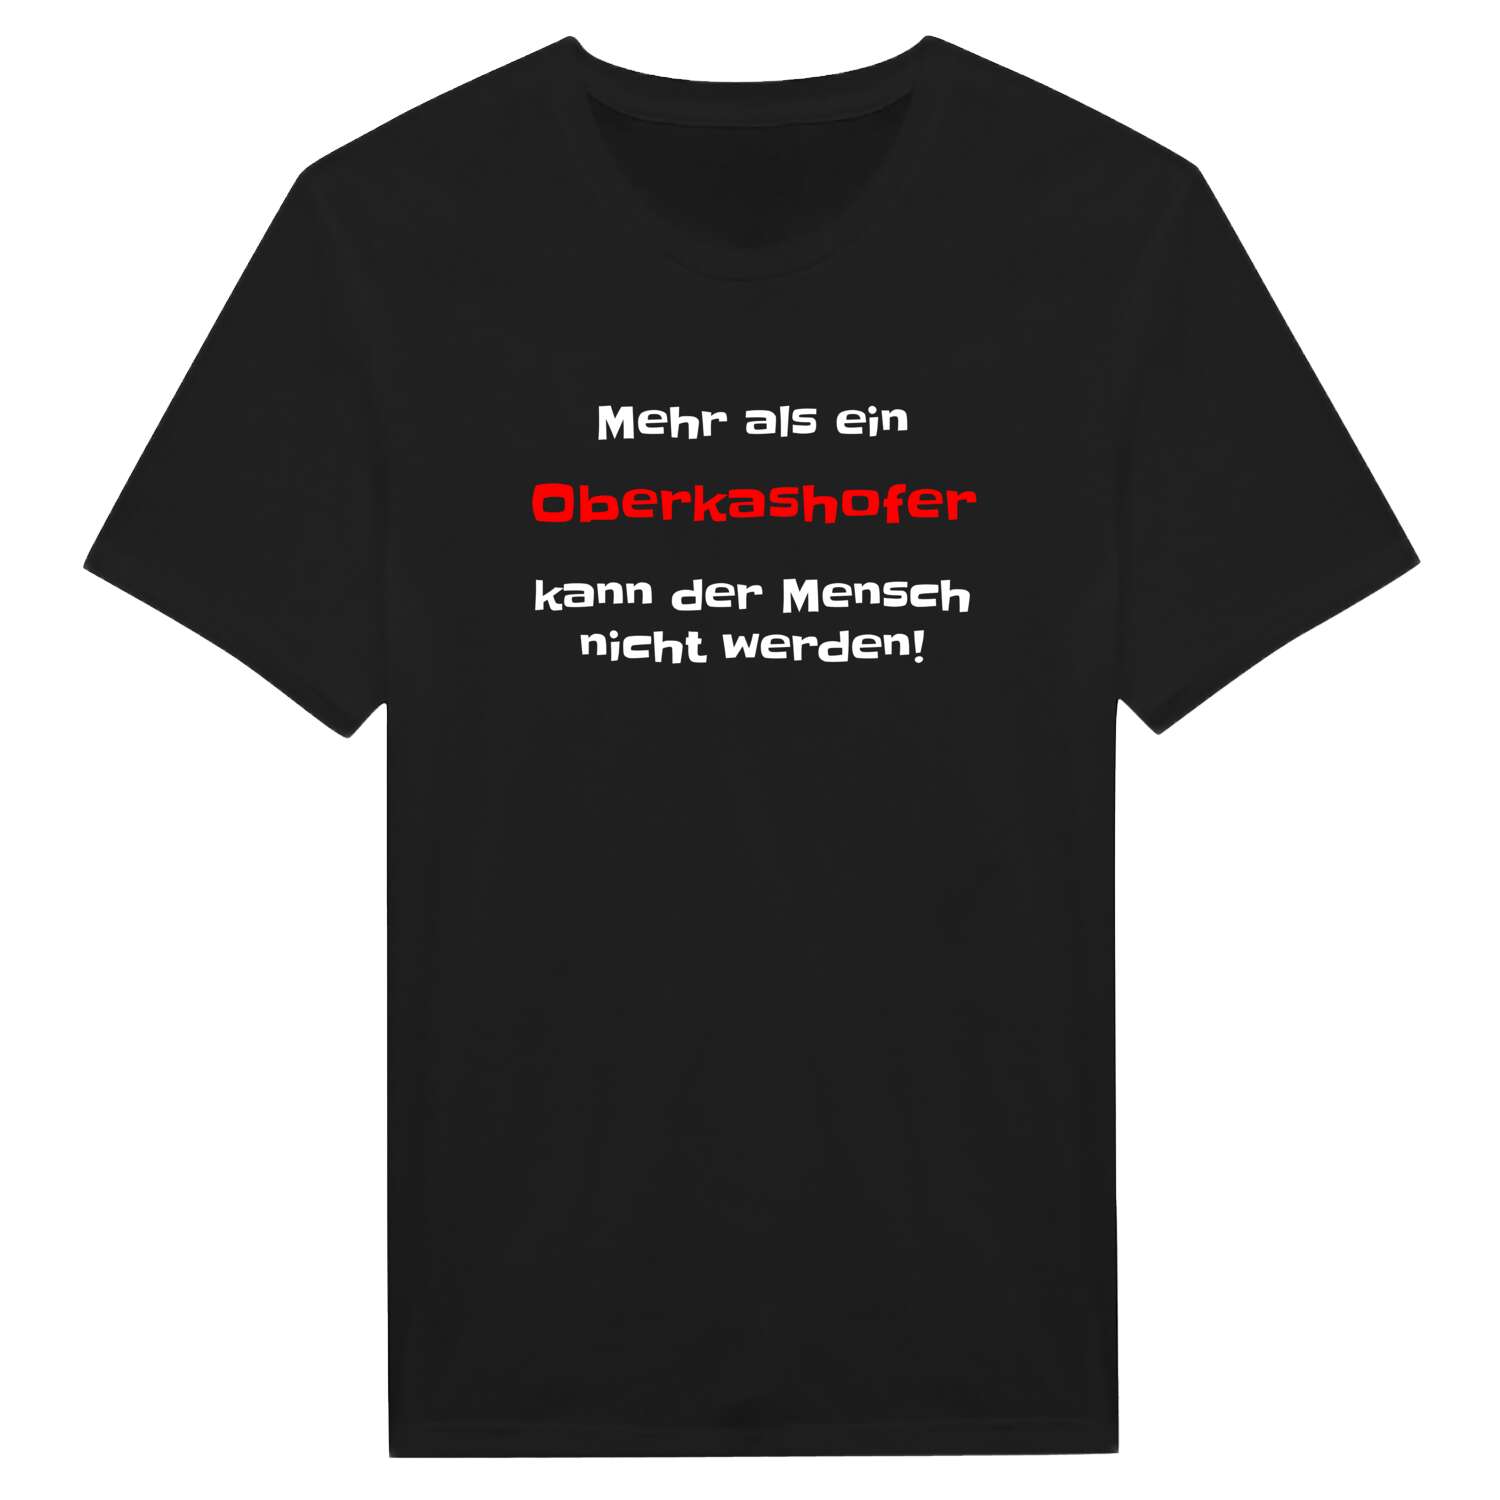 Oberkashof T-Shirt »Mehr als ein«